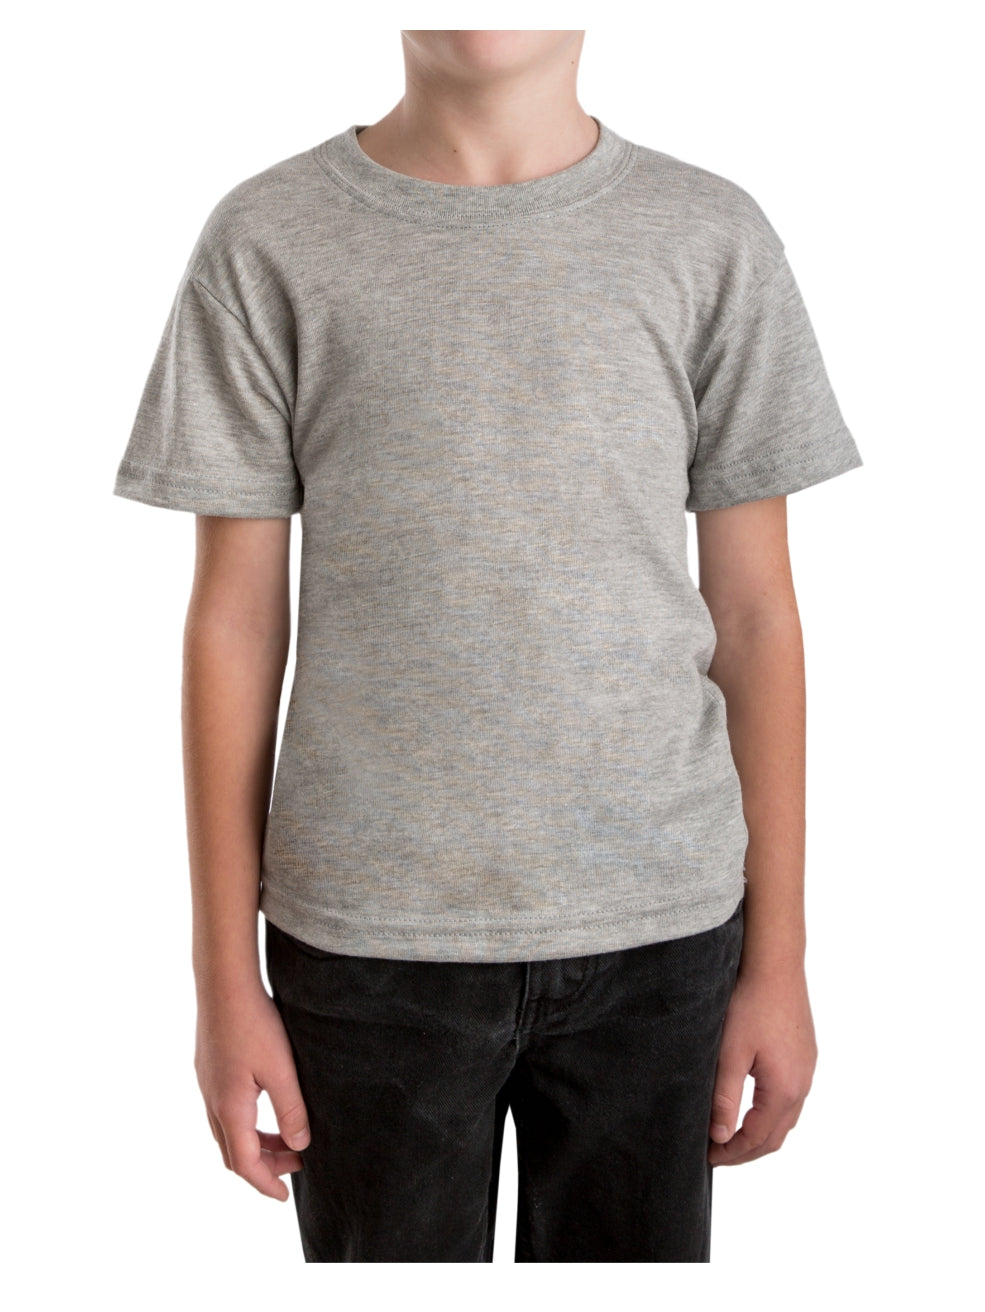 Youth Basic Short Sleeve Crew T-shirt